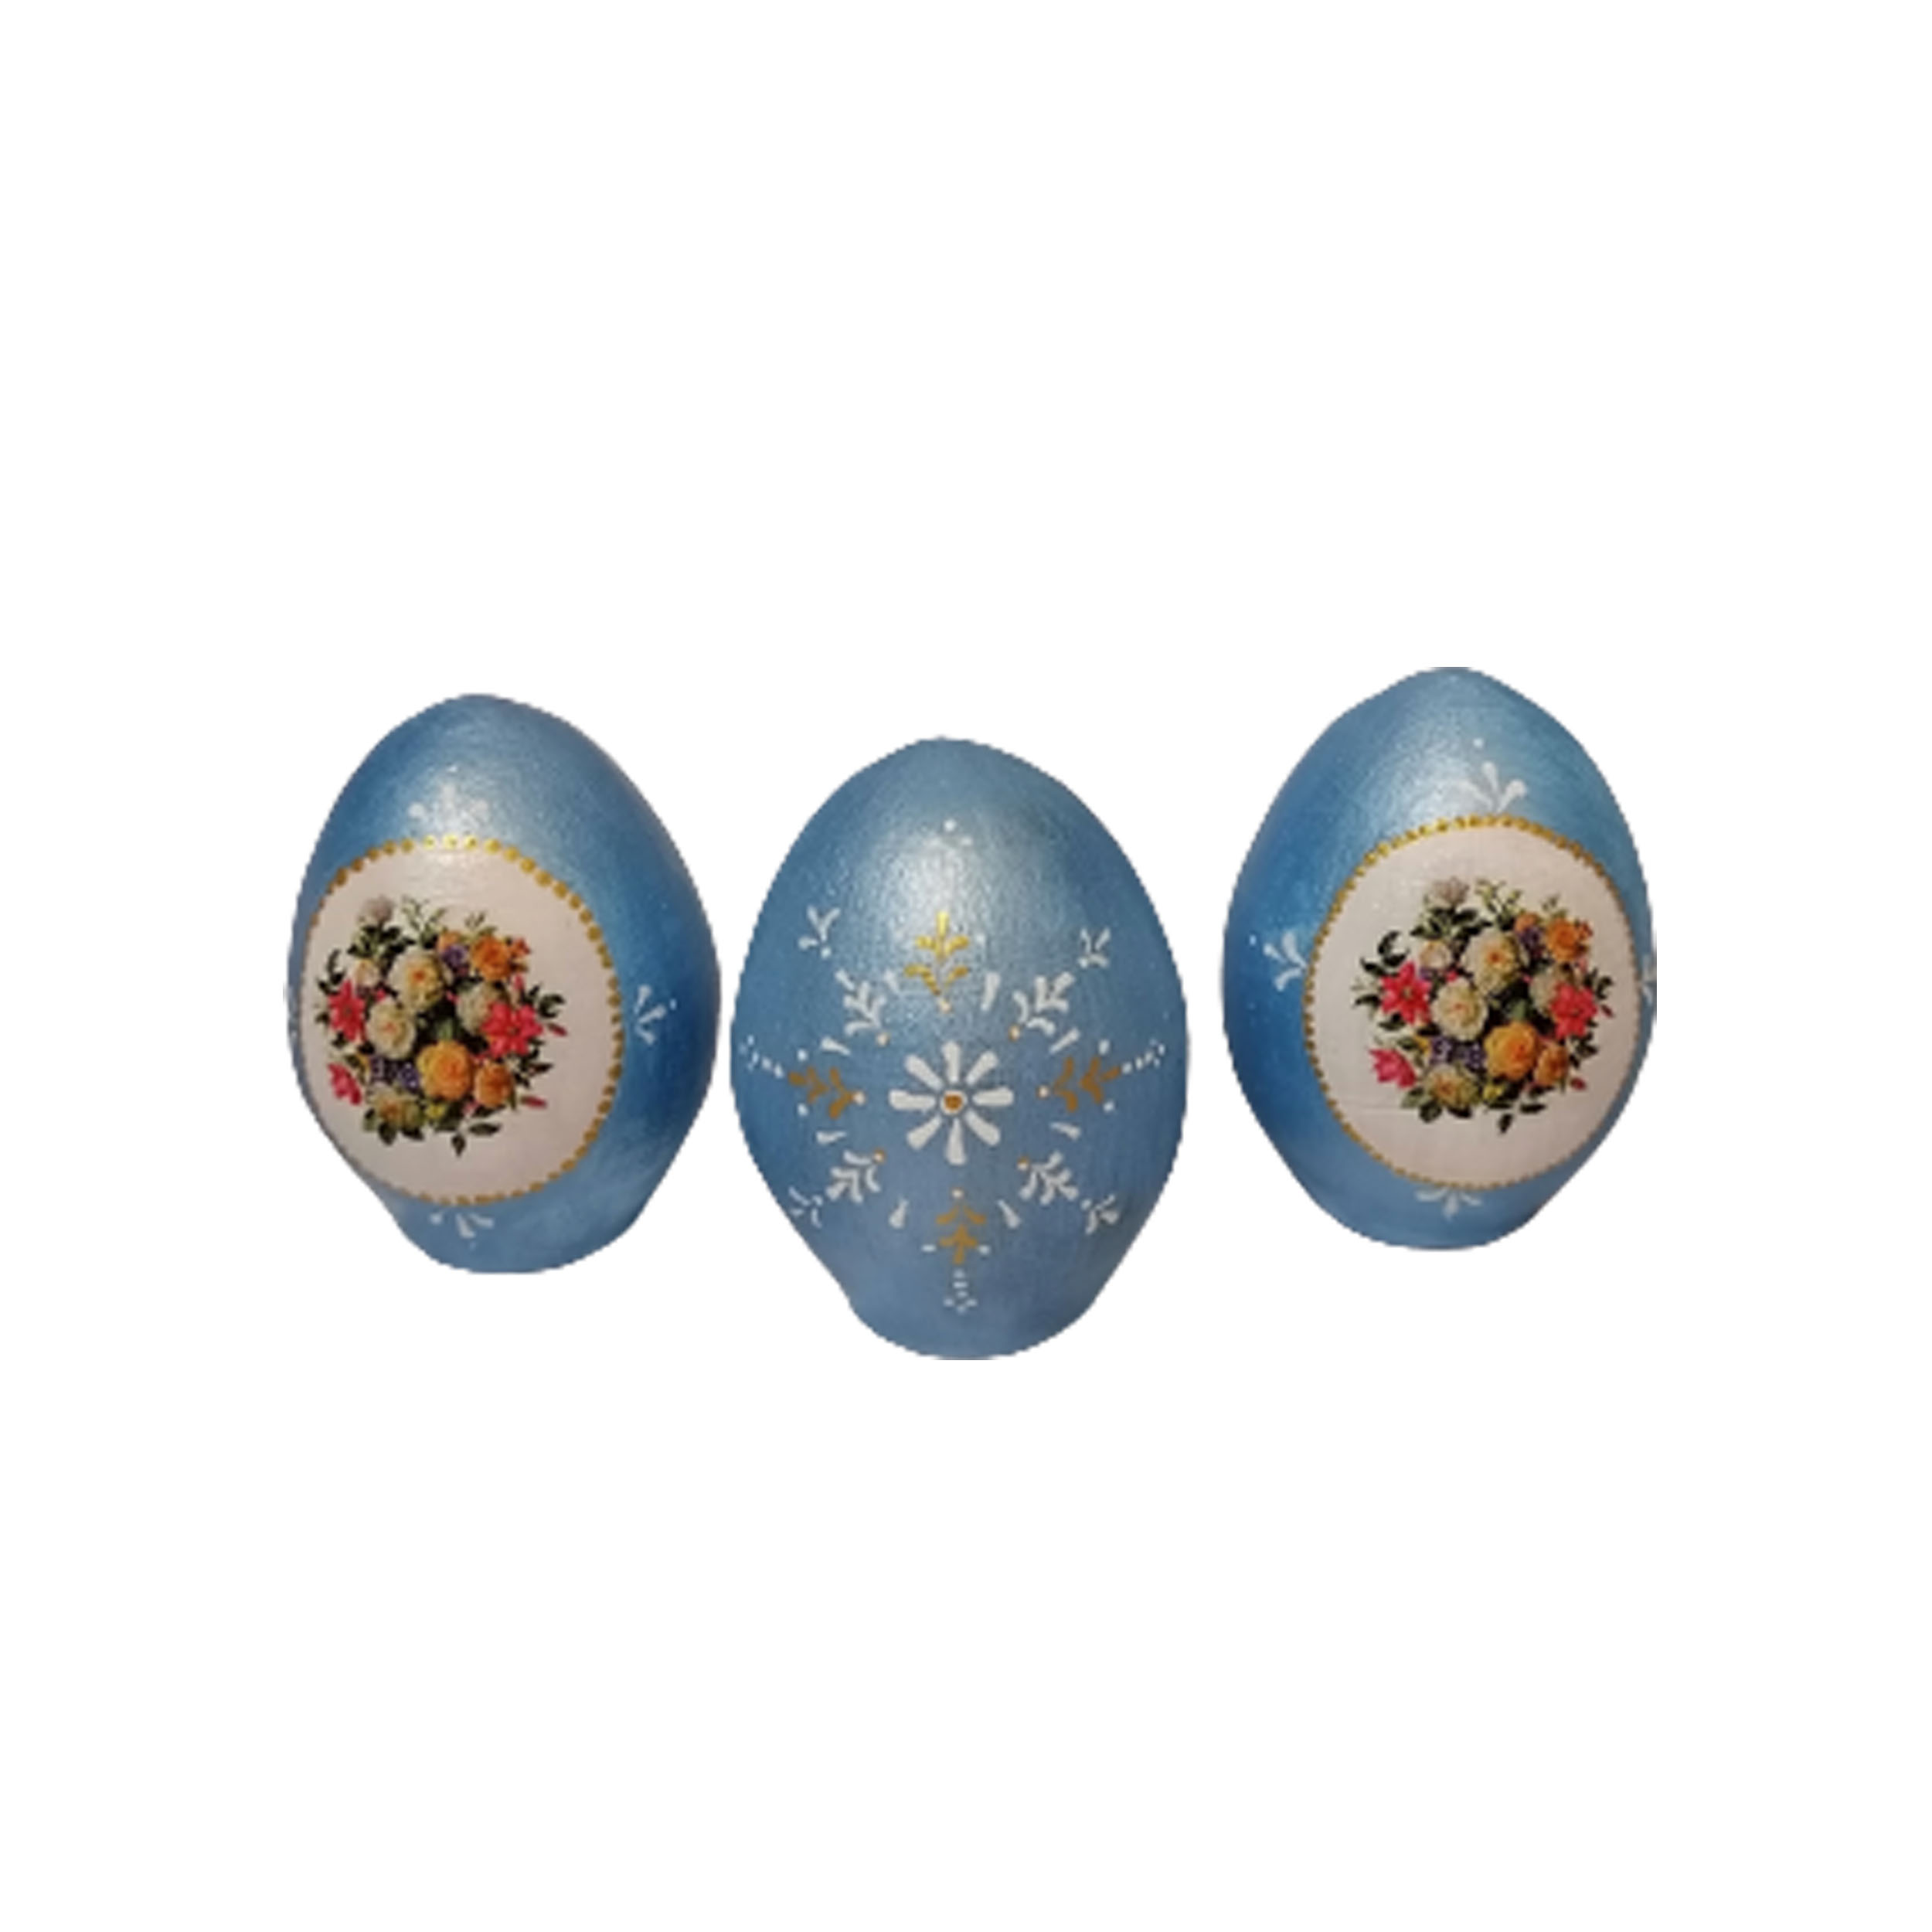  تخم مرغ تزئینی طرح بوته گل سال نو کد ADU1 مجموعه سه عددی 